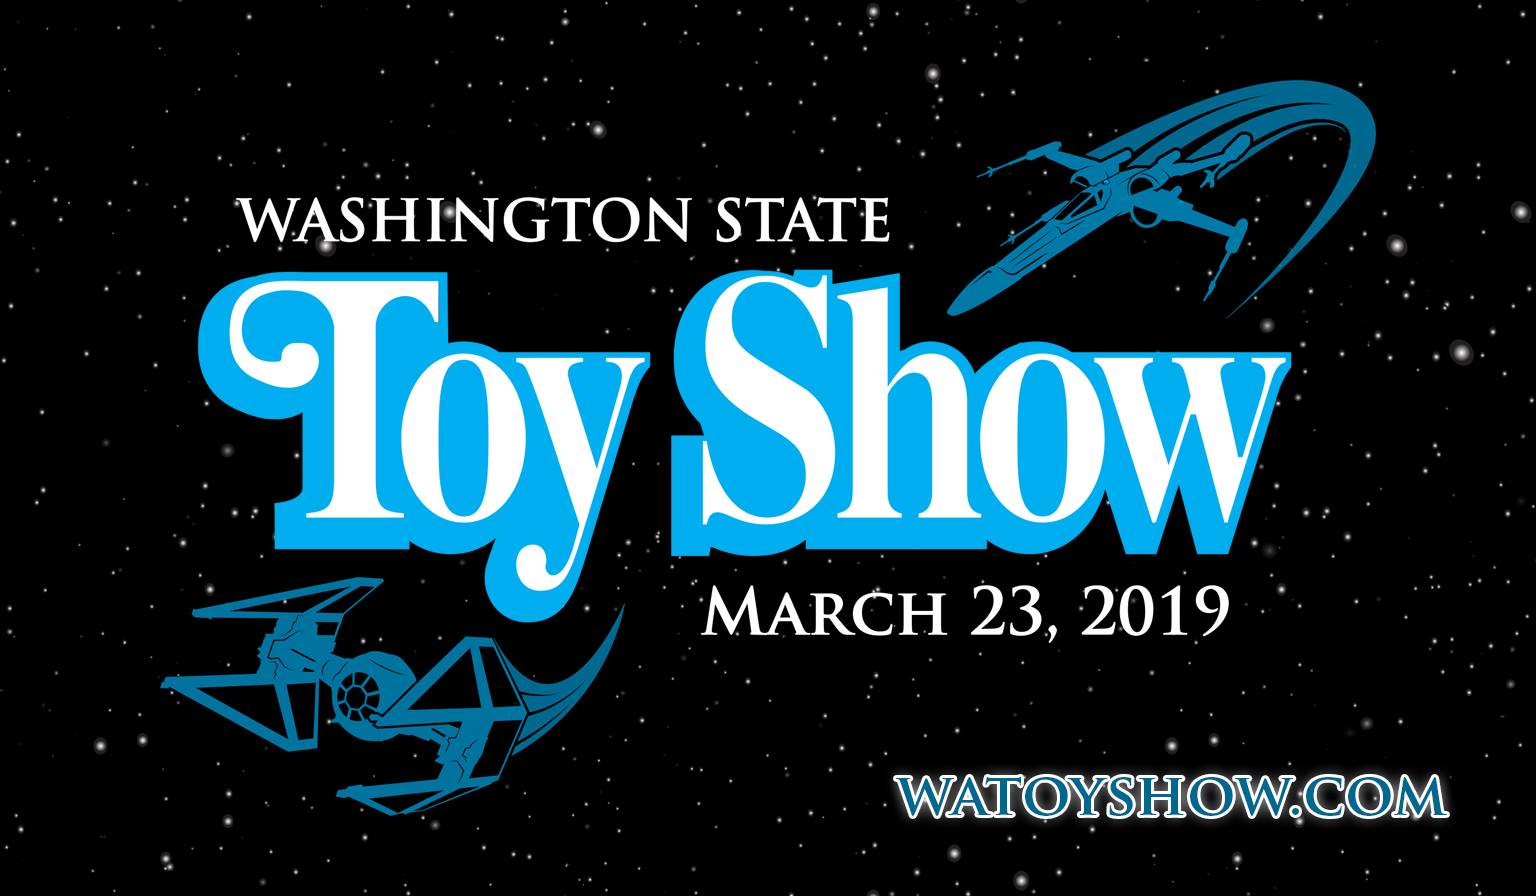 Washington State Toy Show